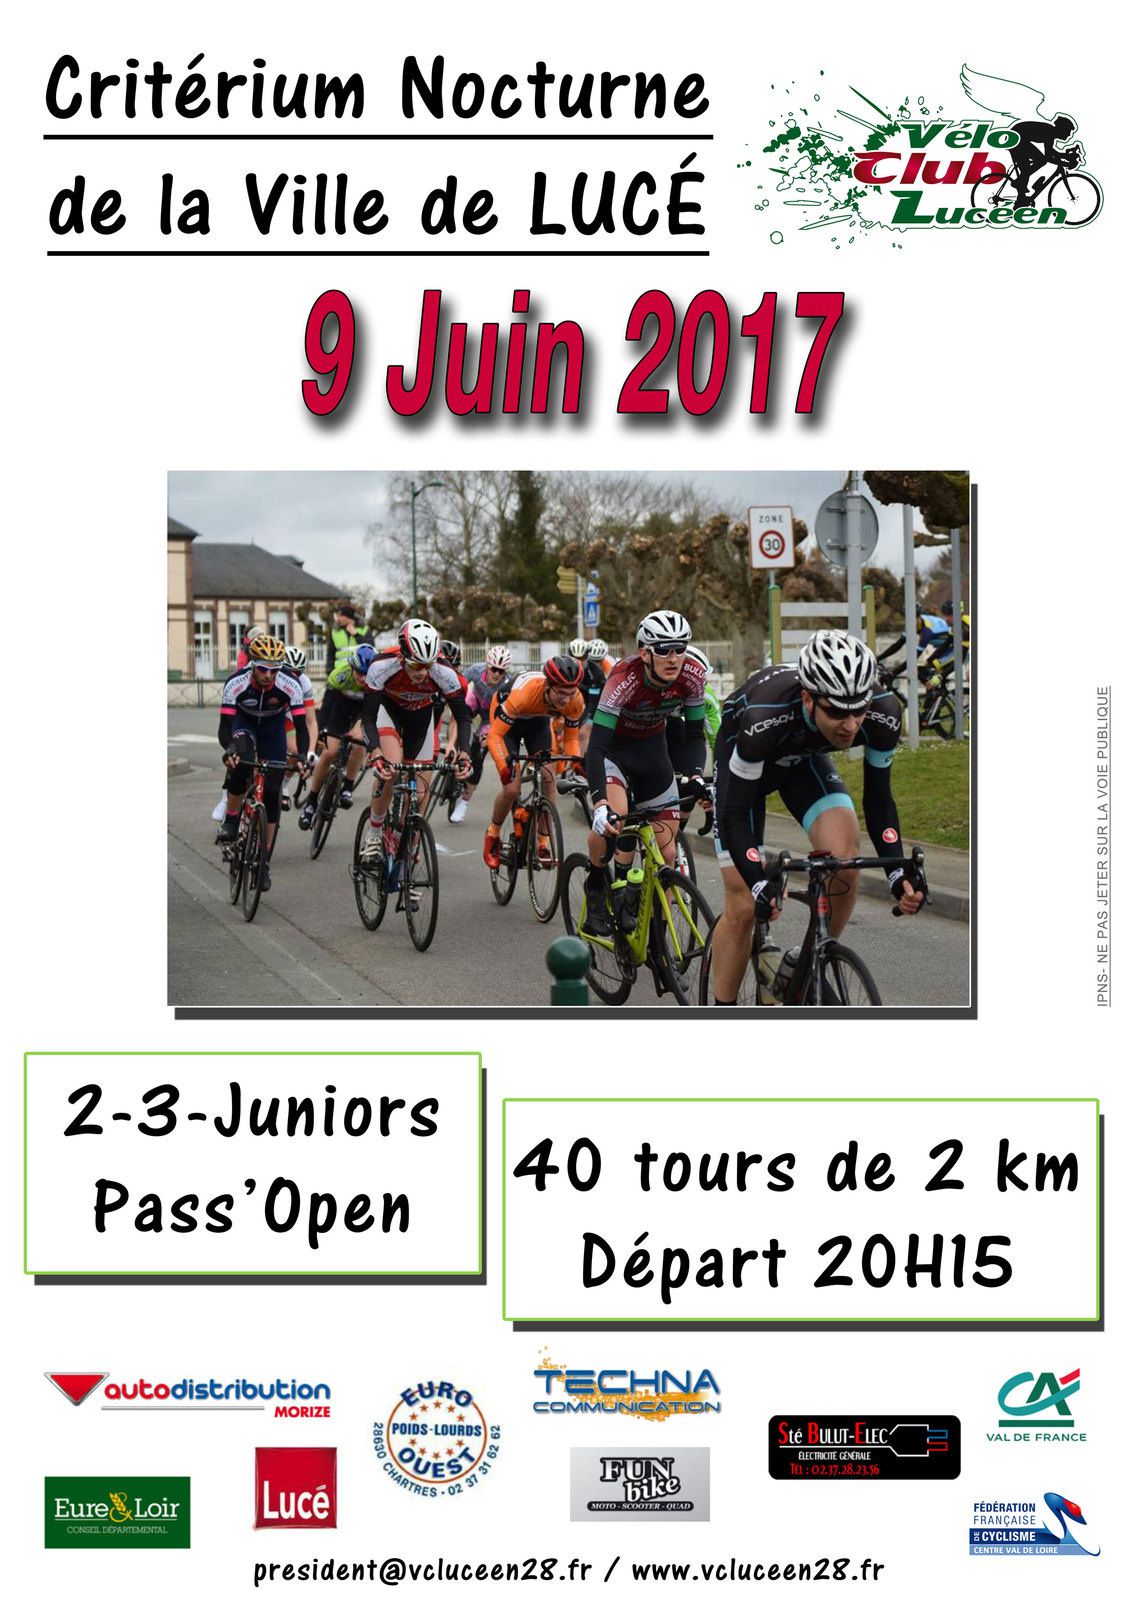 Critérium de Lucé (28) en 2, 3, J et PC open le vendredi 9 juin : un beau plateau de 53 coureurs avec le champion de France juniors